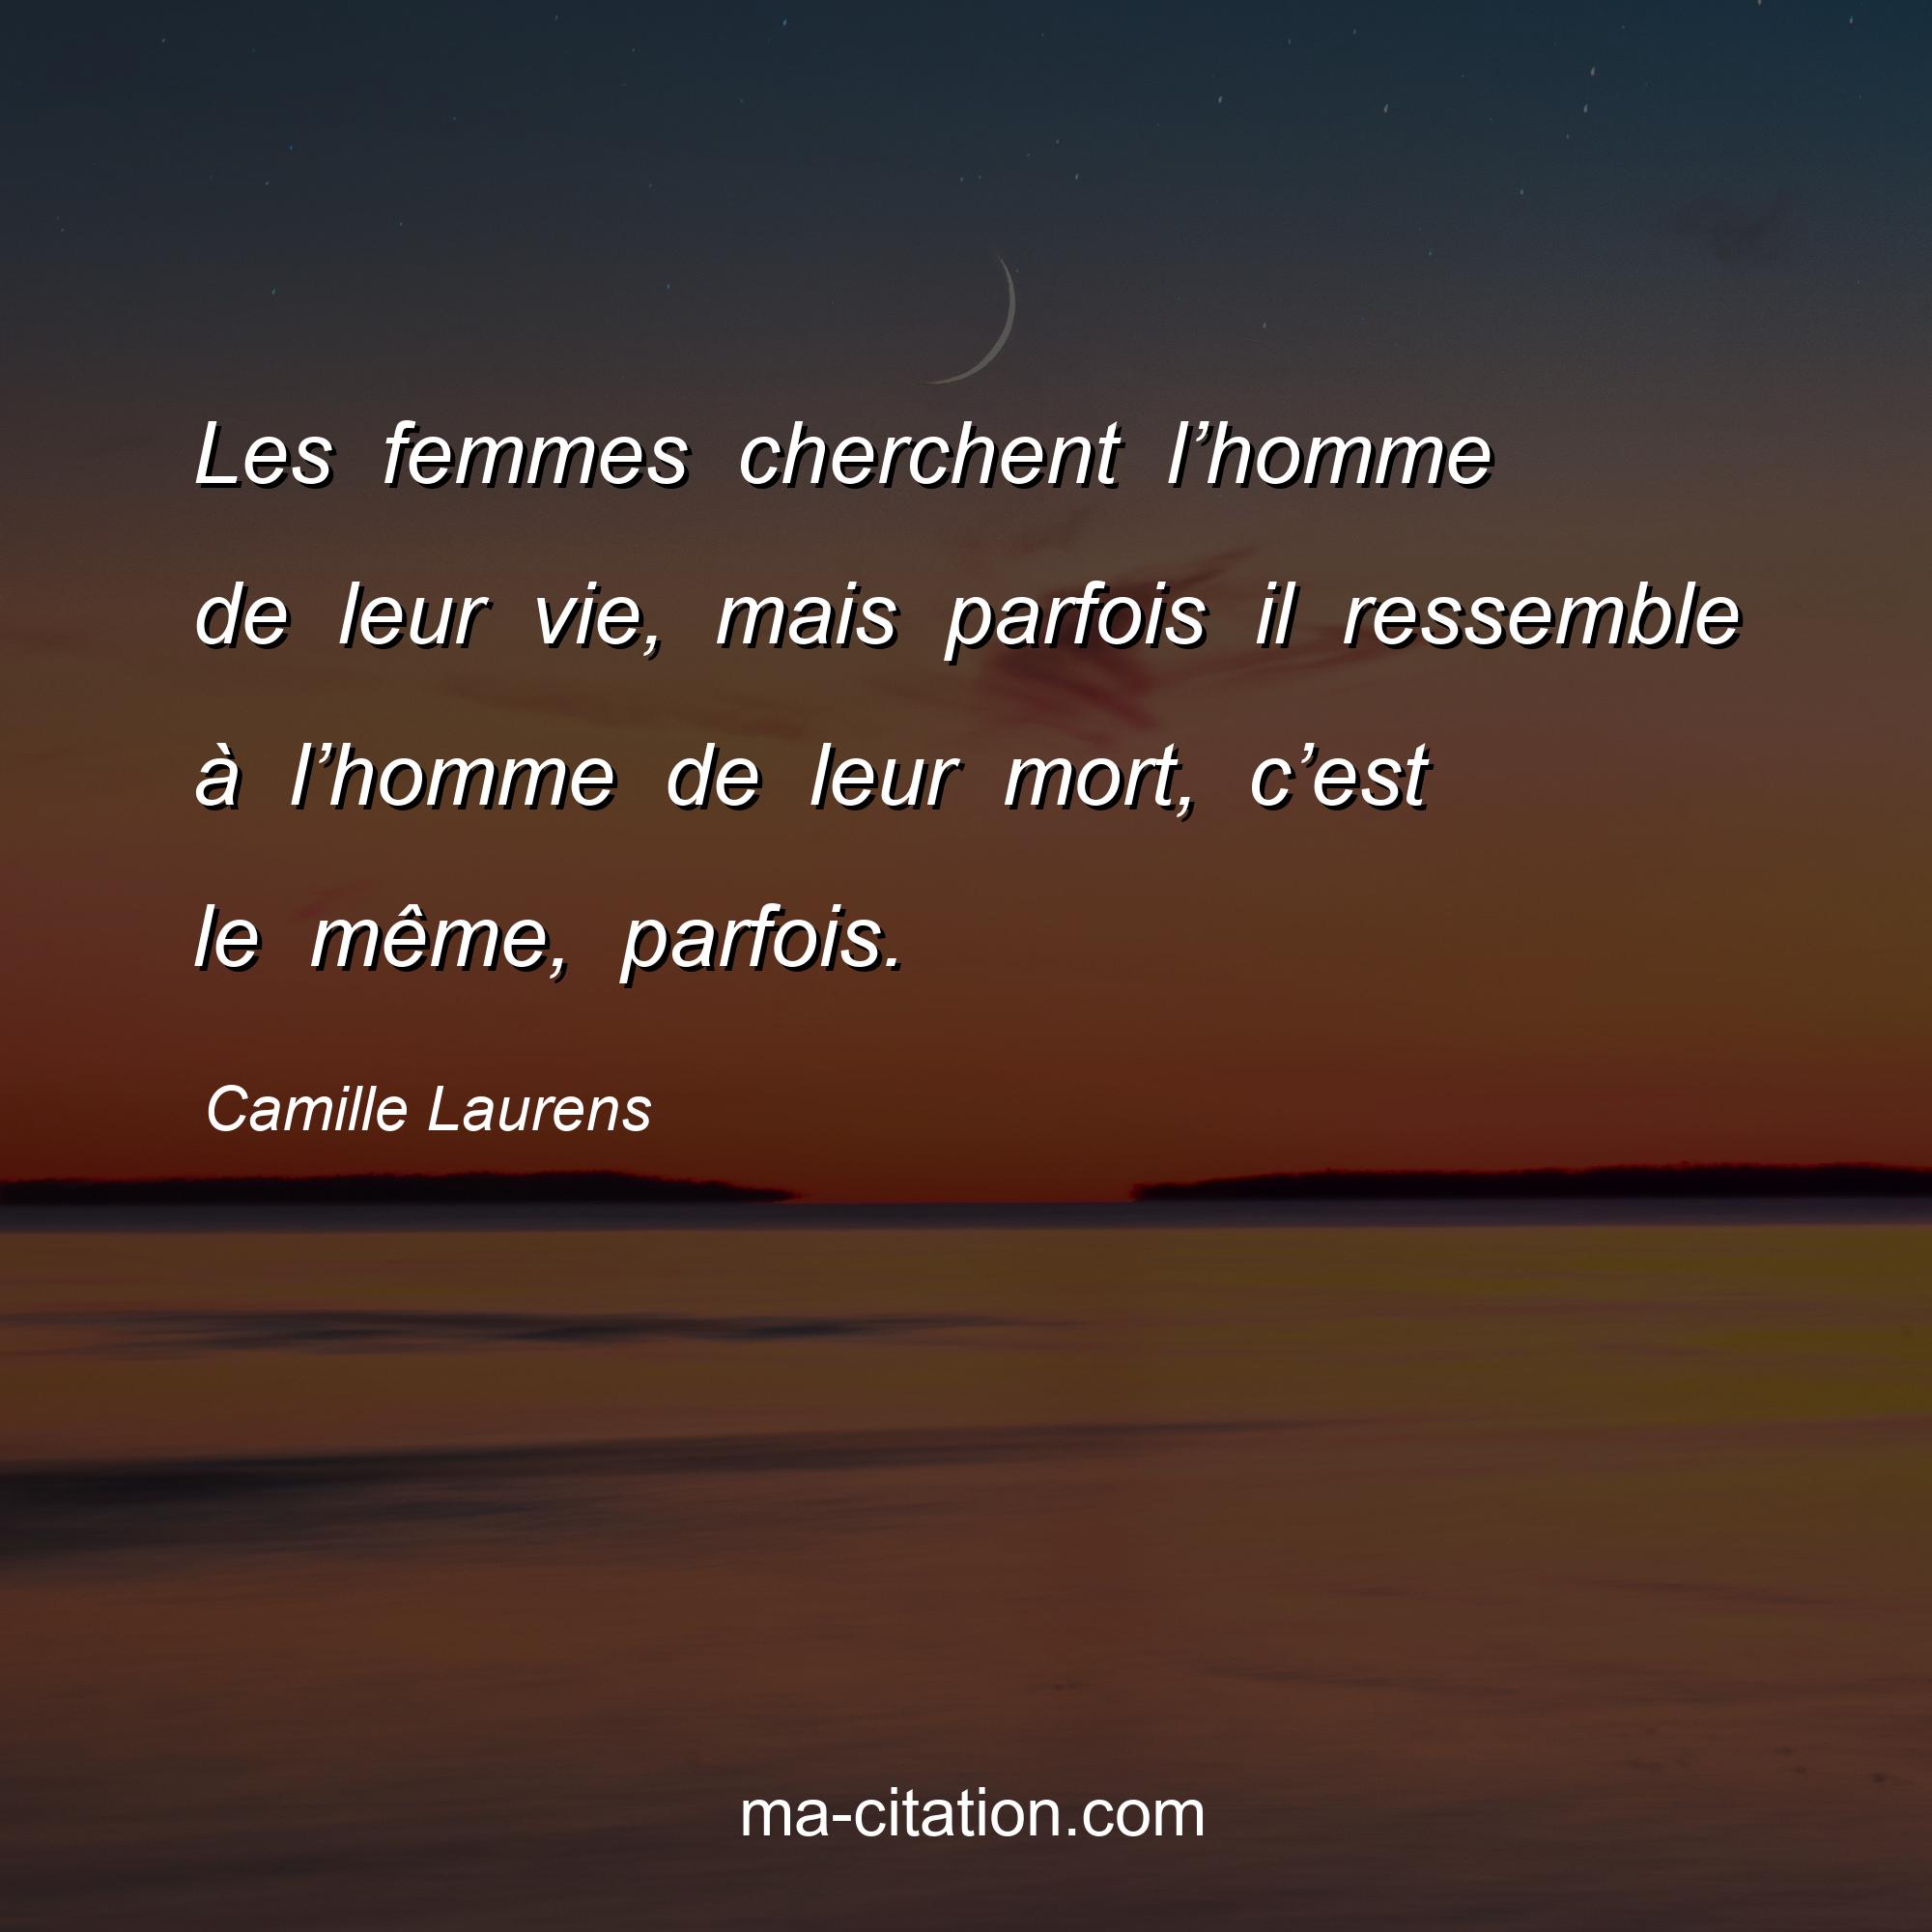 Camille Laurens : Les femmes cherchent l’homme de leur vie, mais parfois il ressemble à l’homme de leur mort, c’est le même, parfois.